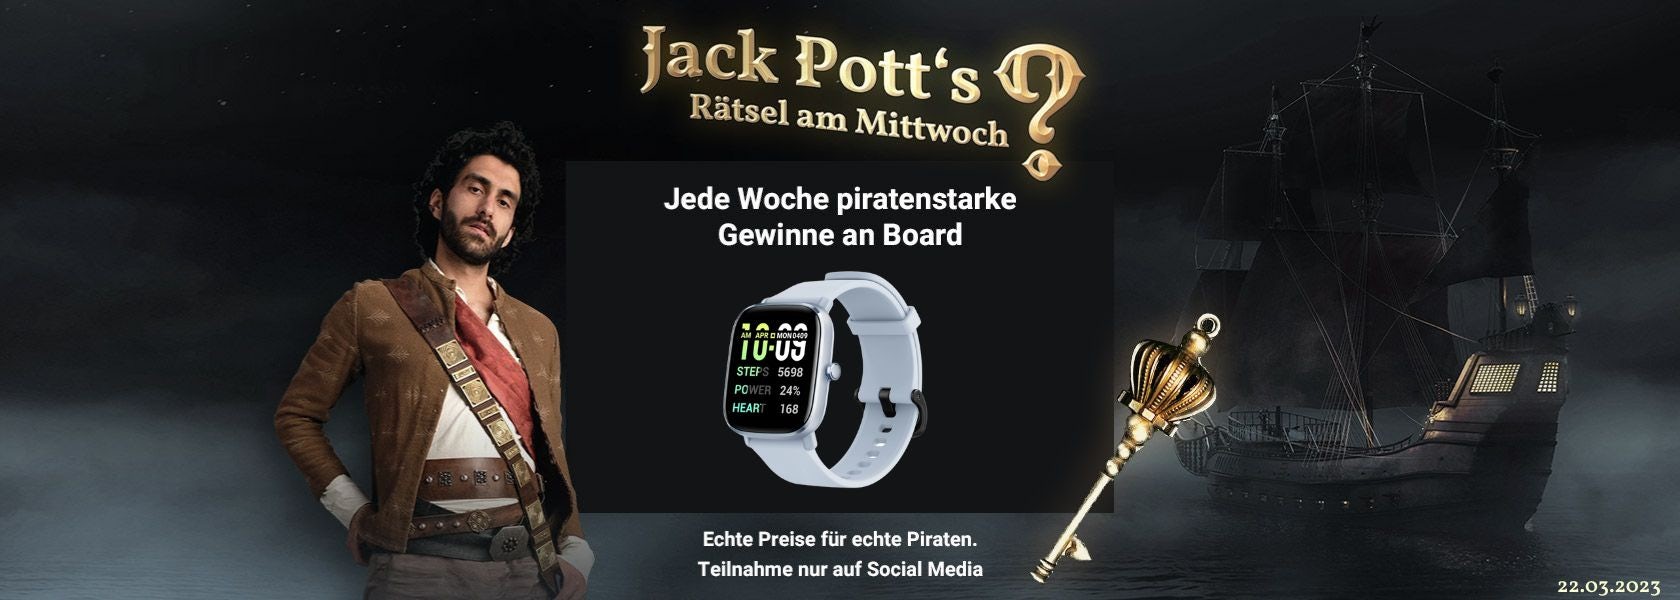 JPI-Header-Jack-Potts-Rätsel-Am-Mittwoch-2203